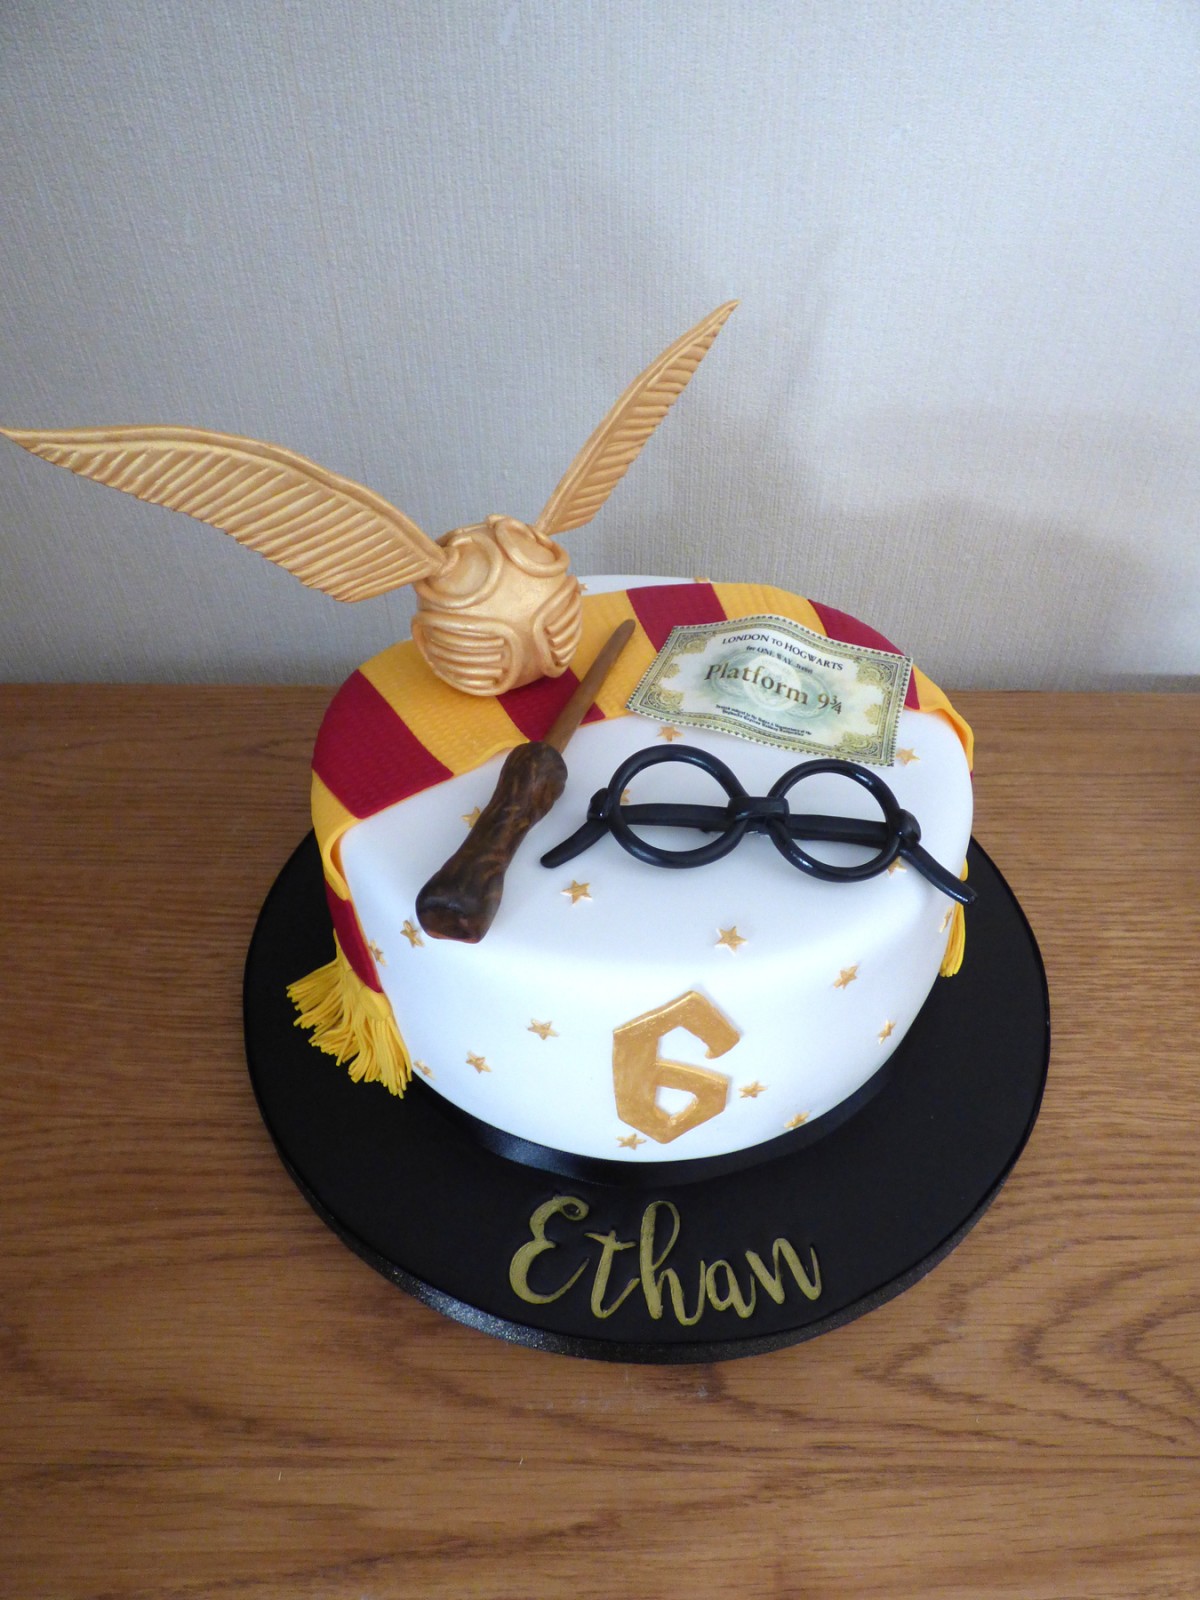 The Best Harry Potter Cake Ideas For Kids Birthdays | POPSUGAR Family